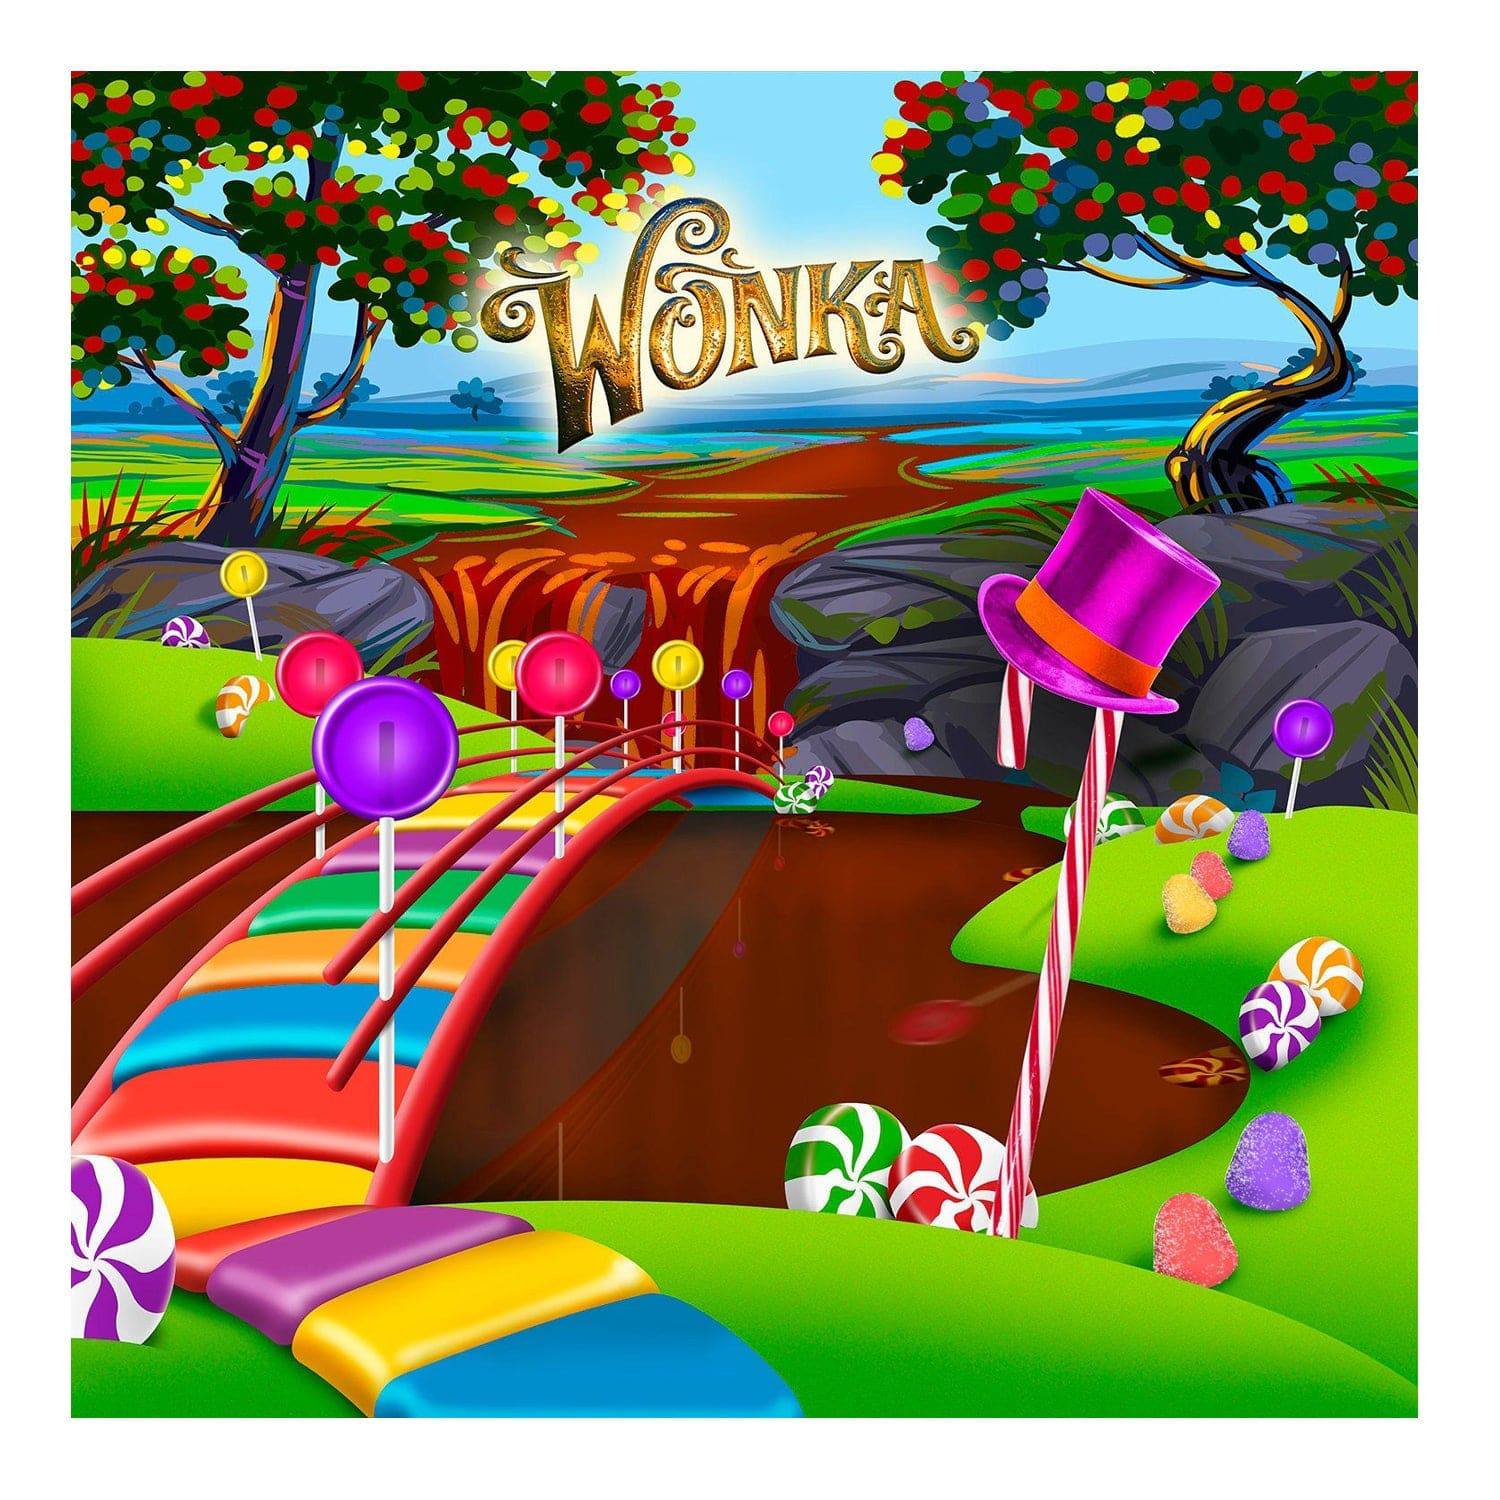 Wonka Candyland Backdrop Photo Backdrop, Backgrounds or Banners - Basic 8  x 8  